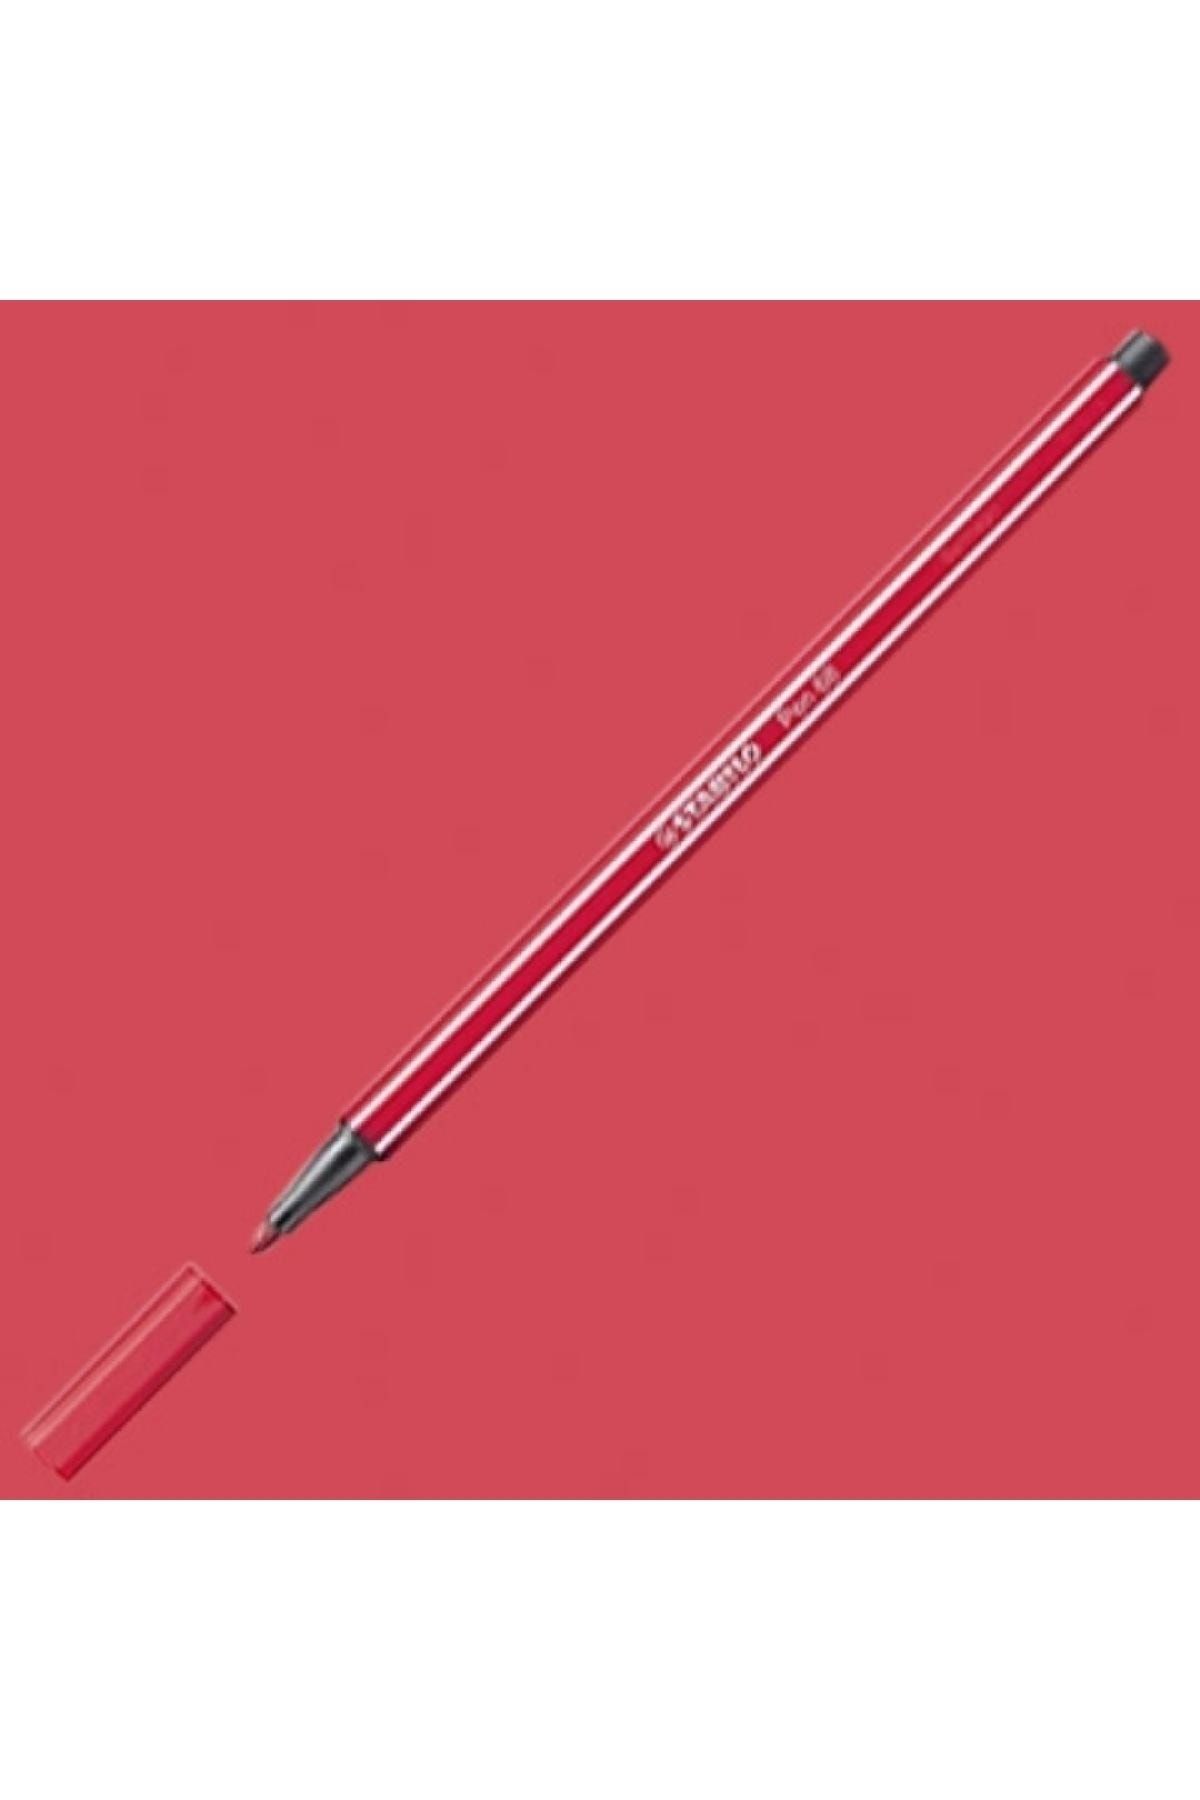 Stabilo Pen 68 Keçe Uçlu Boya Kalemi Koyu Kırmızı